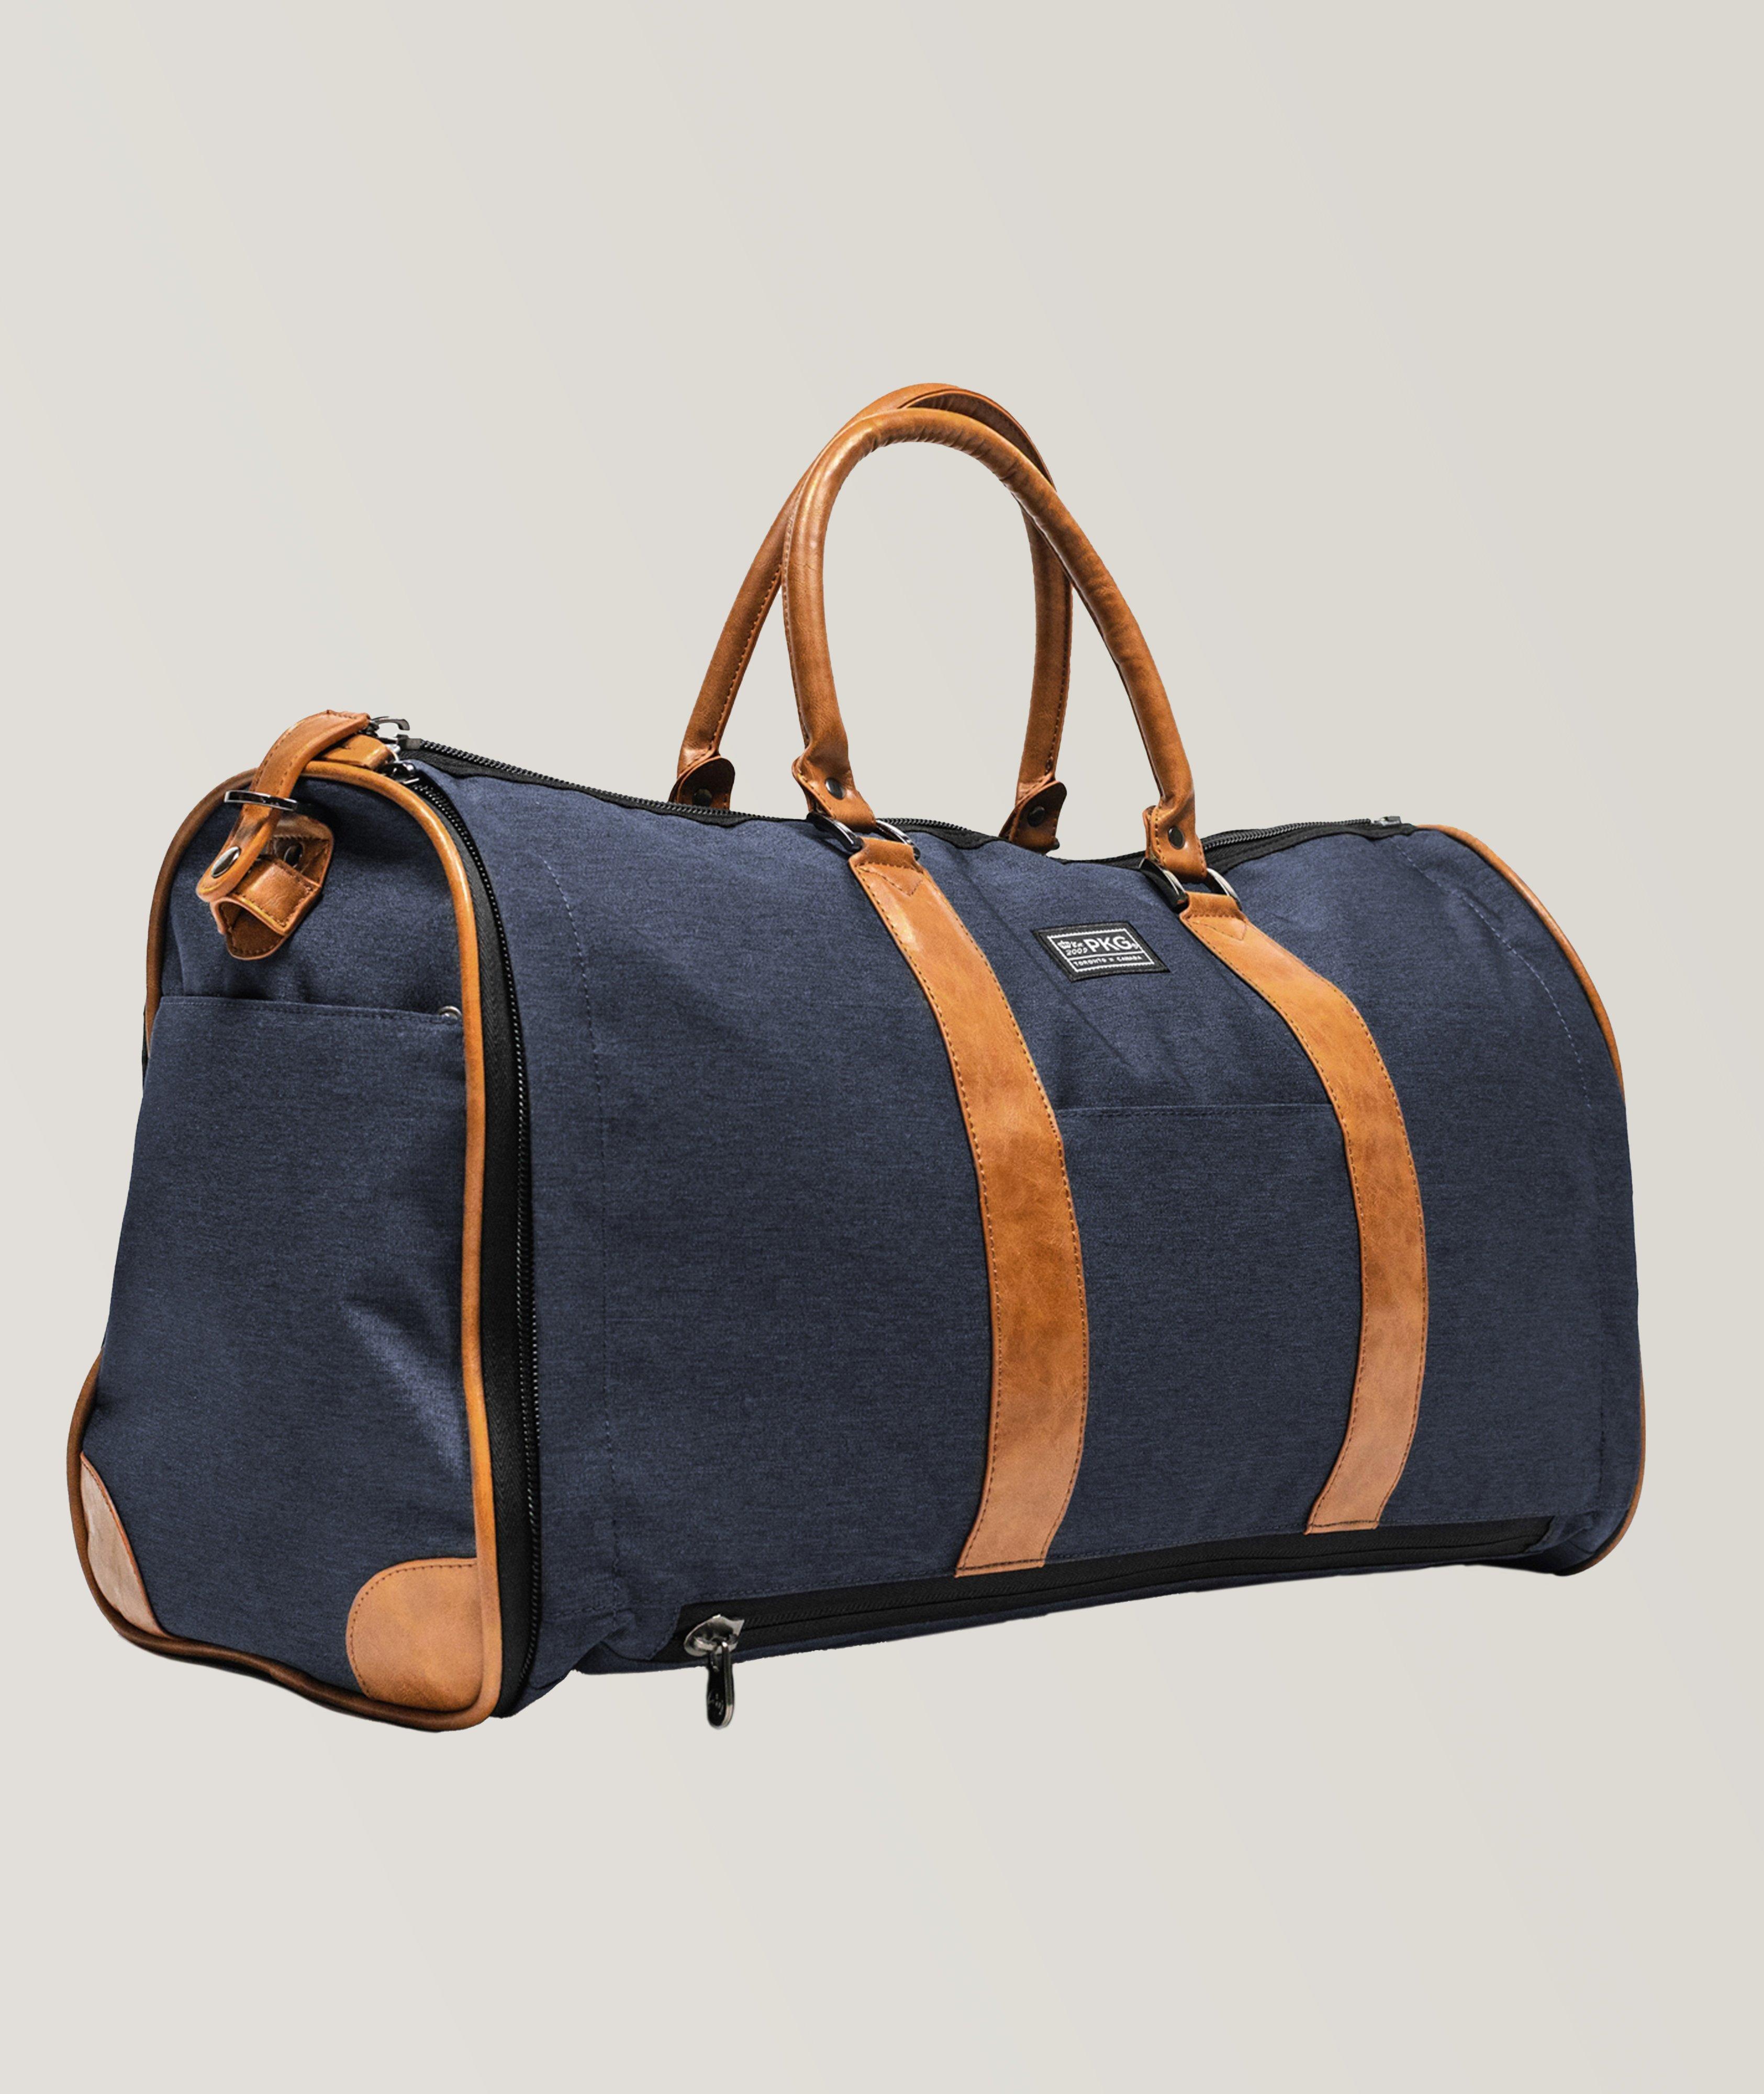 Rosedale II Convertible Duffel Garment Bag image 0